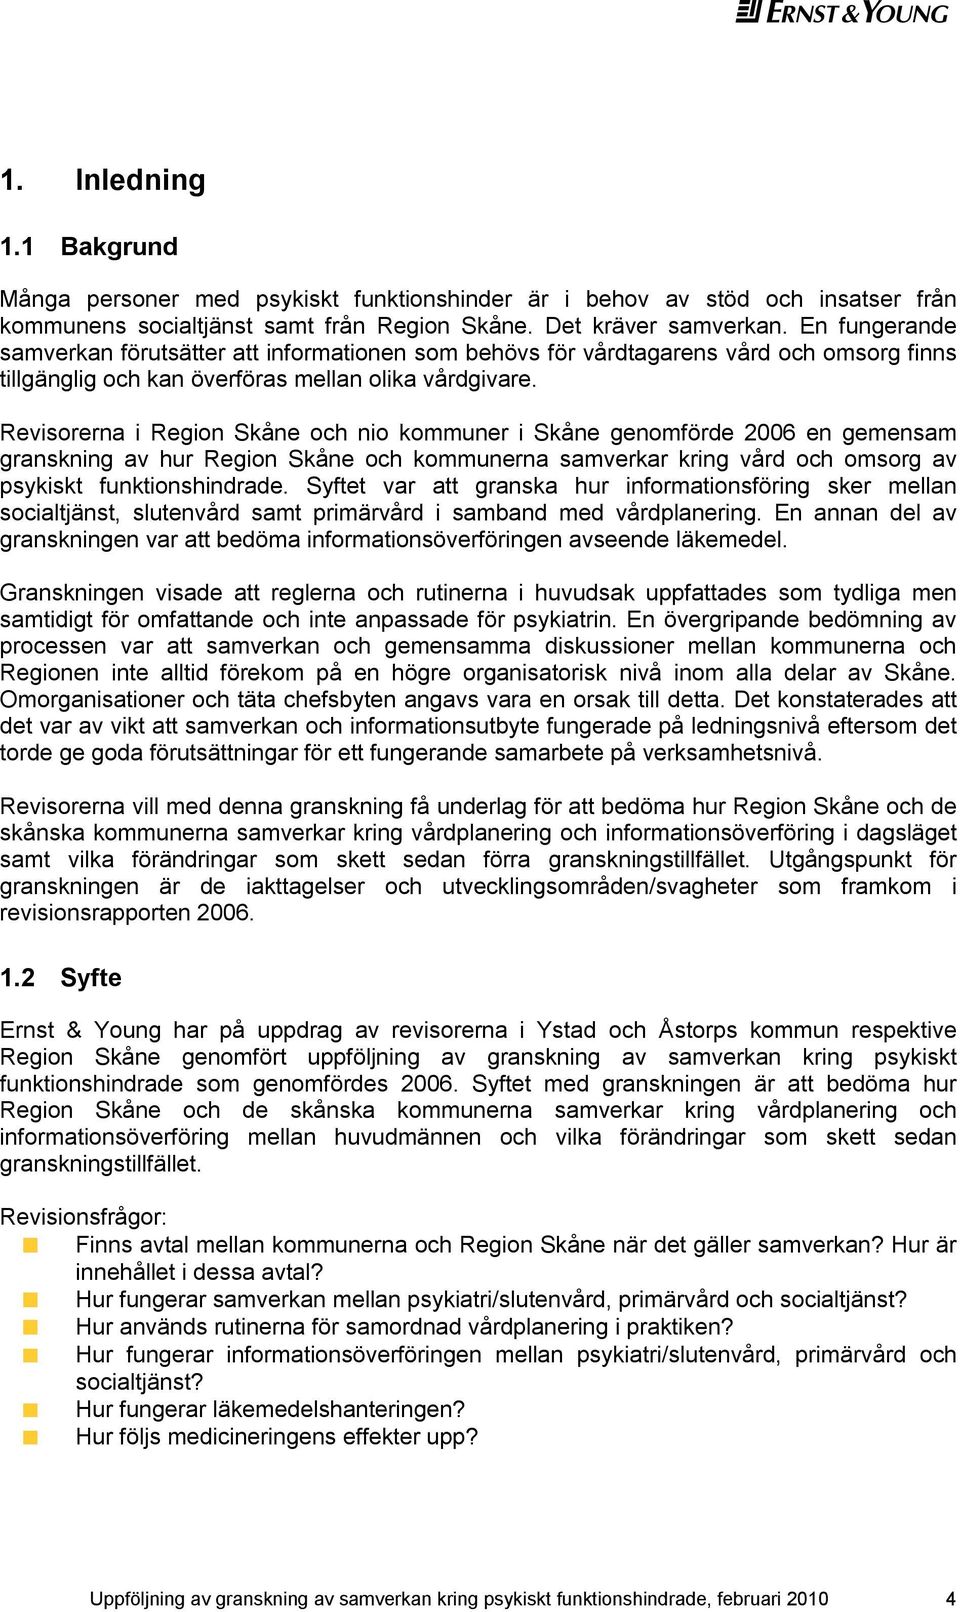 Revisorerna i Region Skåne och nio kommuner i Skåne genomförde 2006 en gemensam granskning av hur Region Skåne och kommunerna samverkar kring vård och omsorg av psykiskt funktionshindrade.